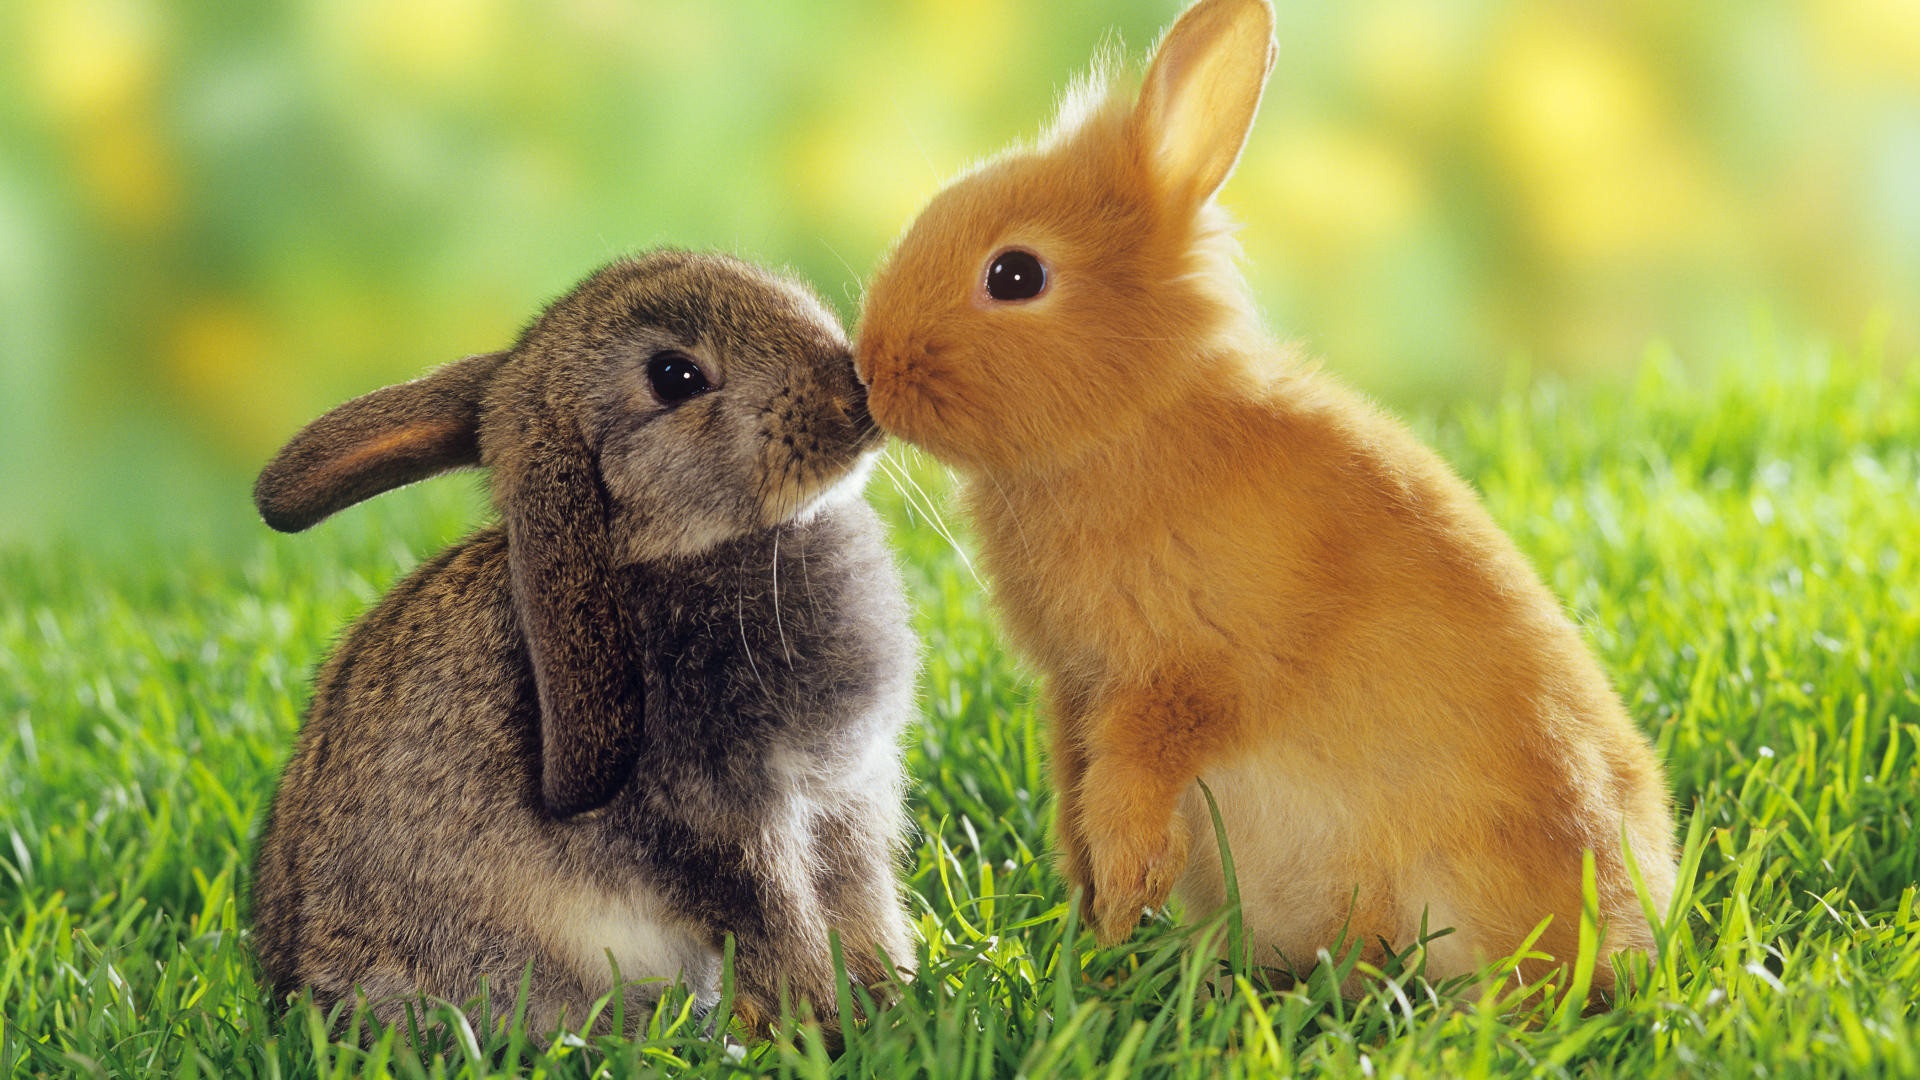 Hãy cùng ngắm nhìn những hình ảnh dễ thương, cute đến lạ kỳ về con thỏ xinh xắn, đáng yêu như một phép màu của thiên nhiên.